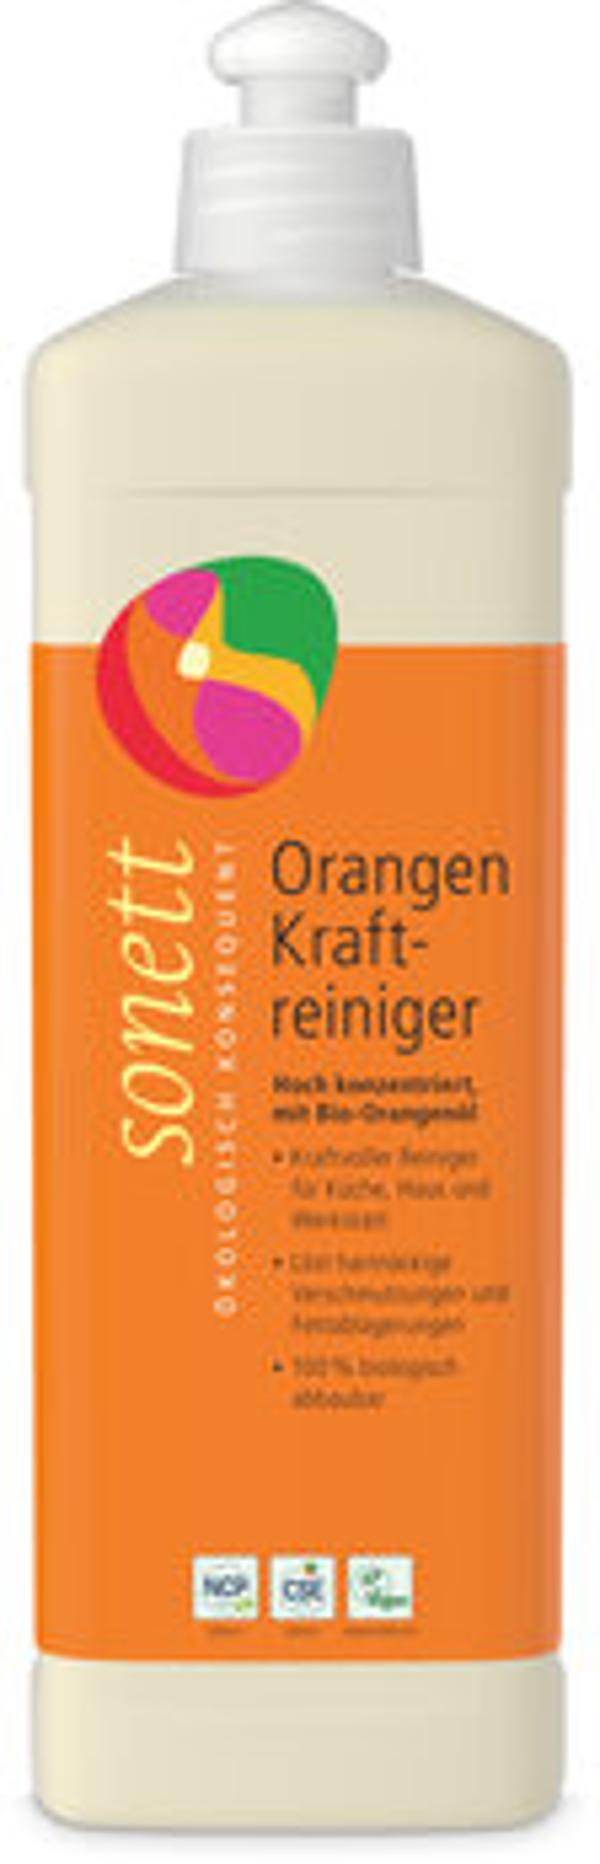 Produktfoto zu Orangenkraftreiniger, 500 ml